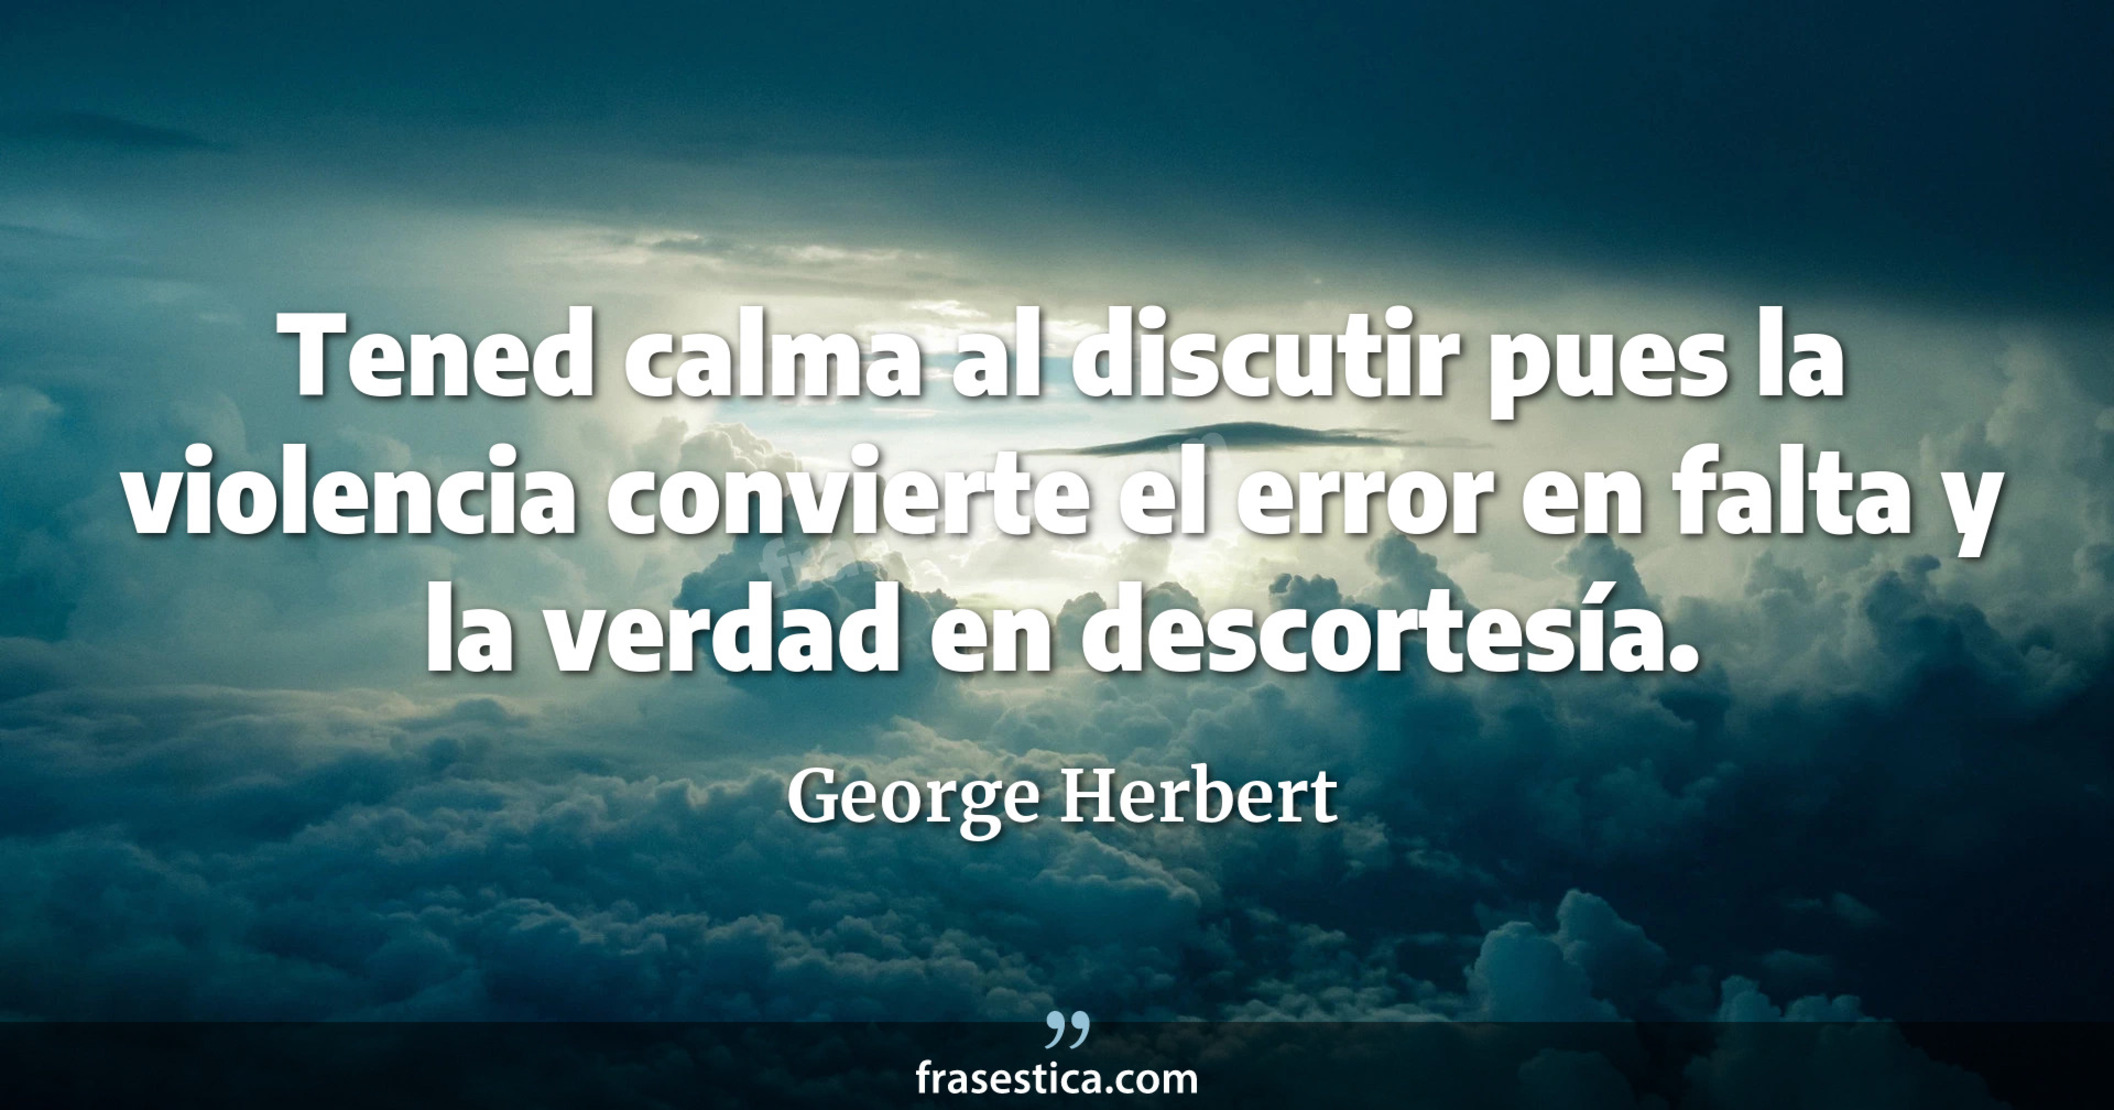 Tened calma al discutir pues la violencia convierte el error en falta y la verdad en descortesía. - George Herbert